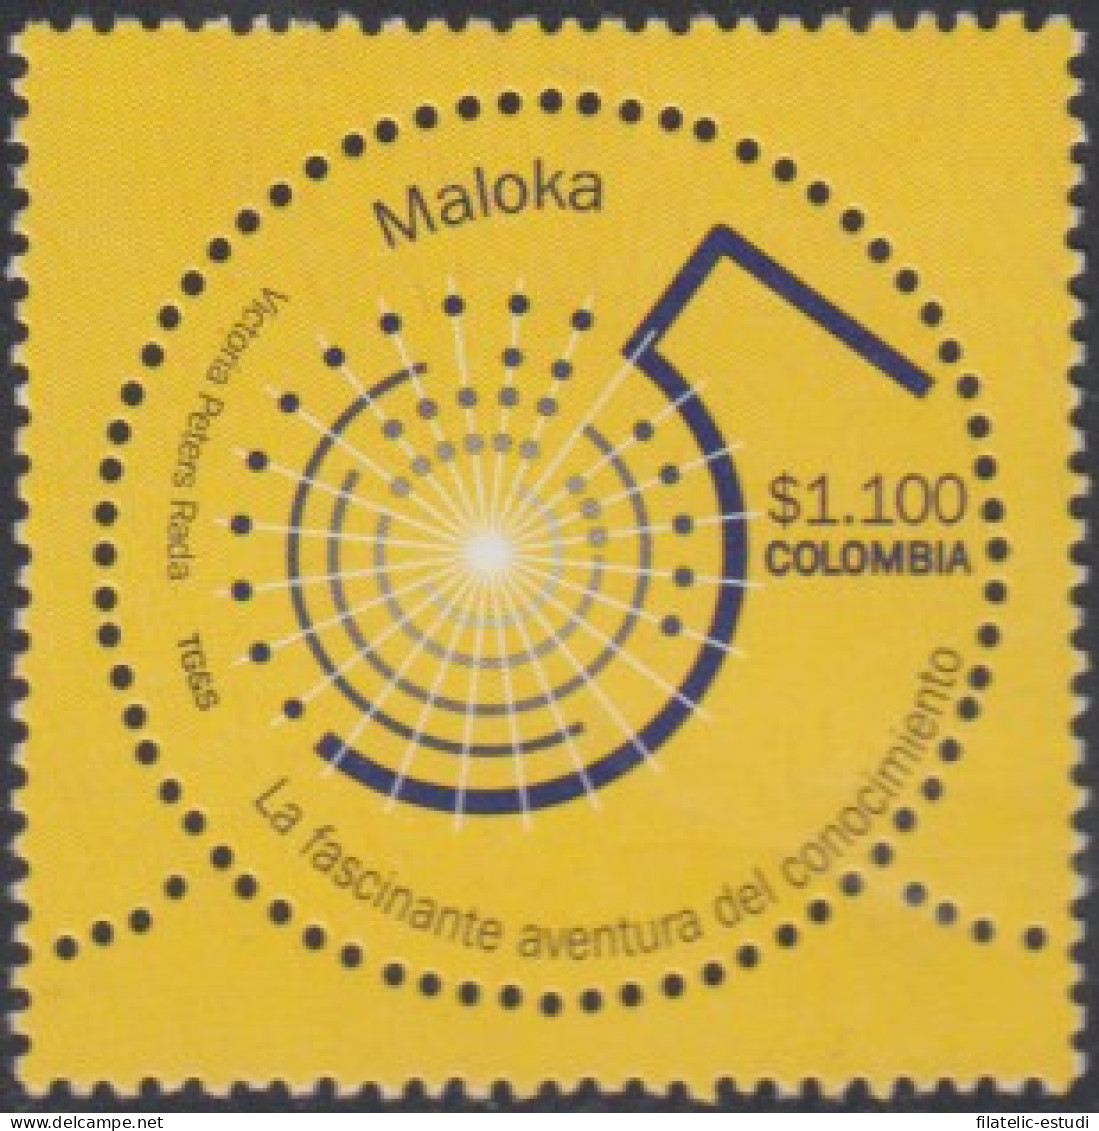 Colombia 1275 2004 Maloka. Centro De Investigación Tegnológico Y Científico MN - Colombia